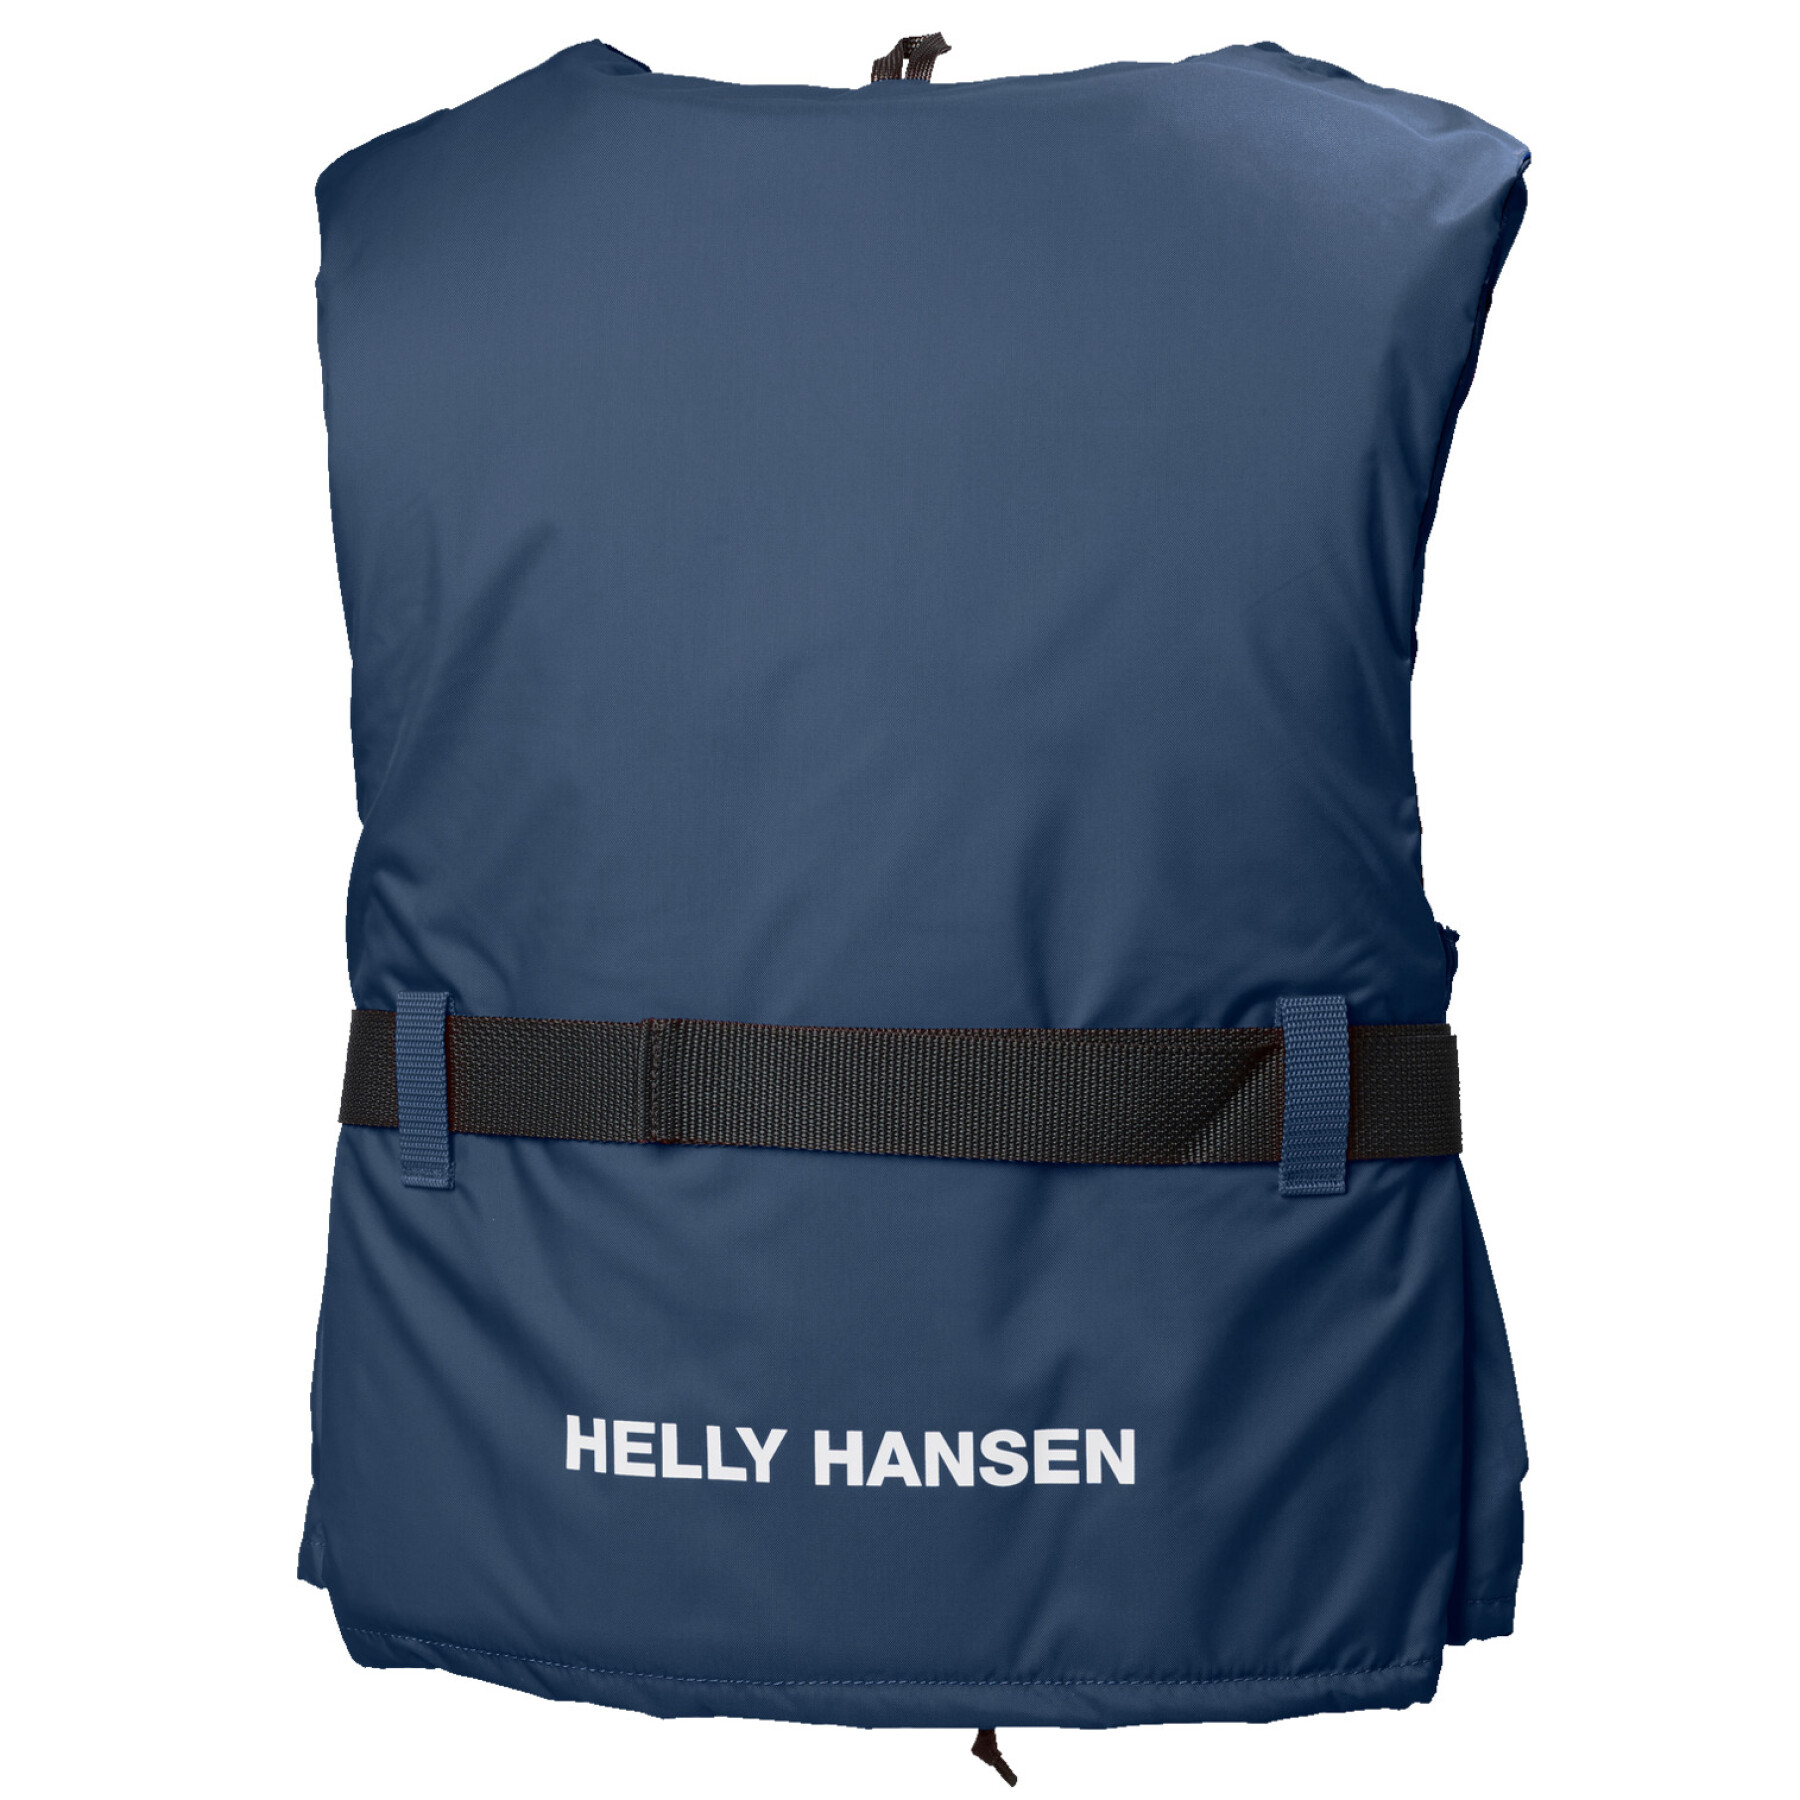 Rettungsweste Helly Hansen sport II